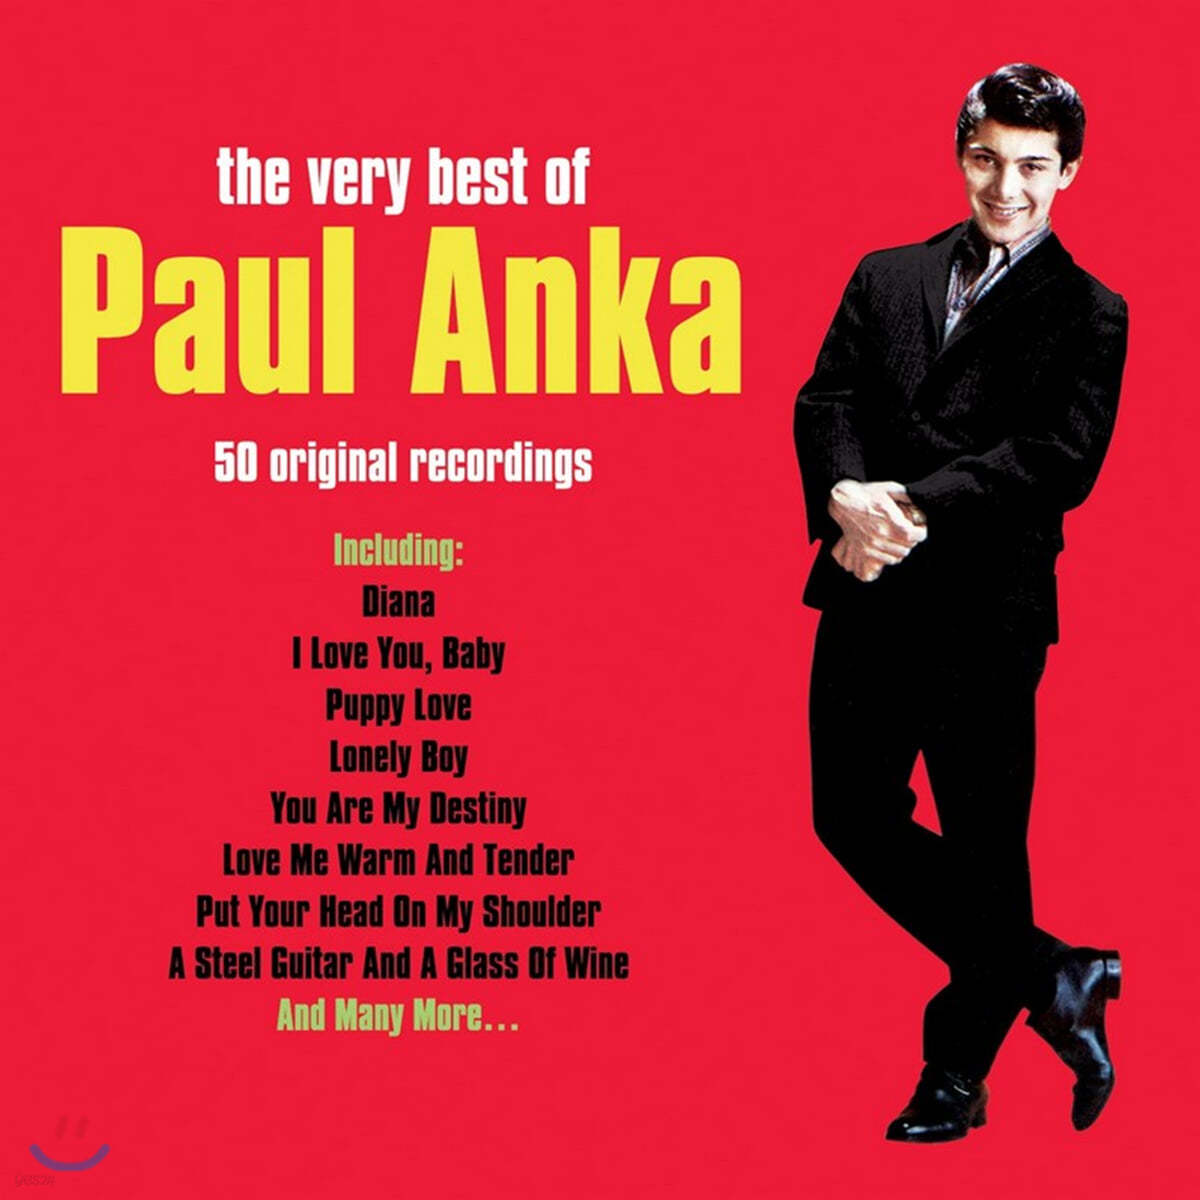 Paul Anka (폴 앵카) - The Very Best of Paul Anka 